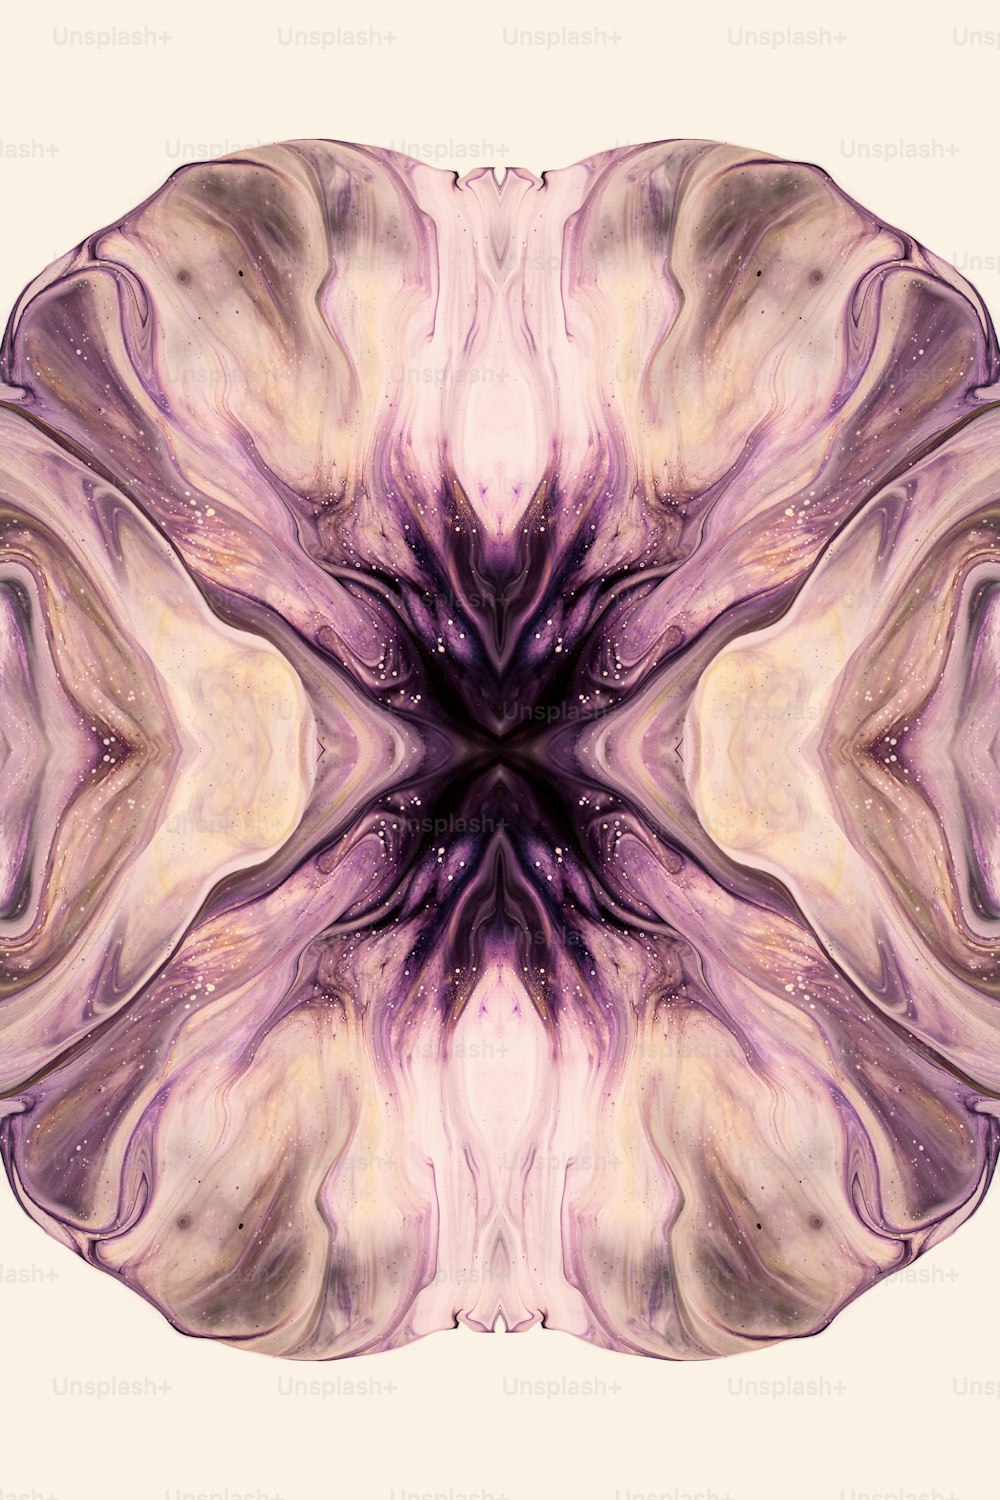 Una imagen abstracta de una flor púrpura con un fondo blanco